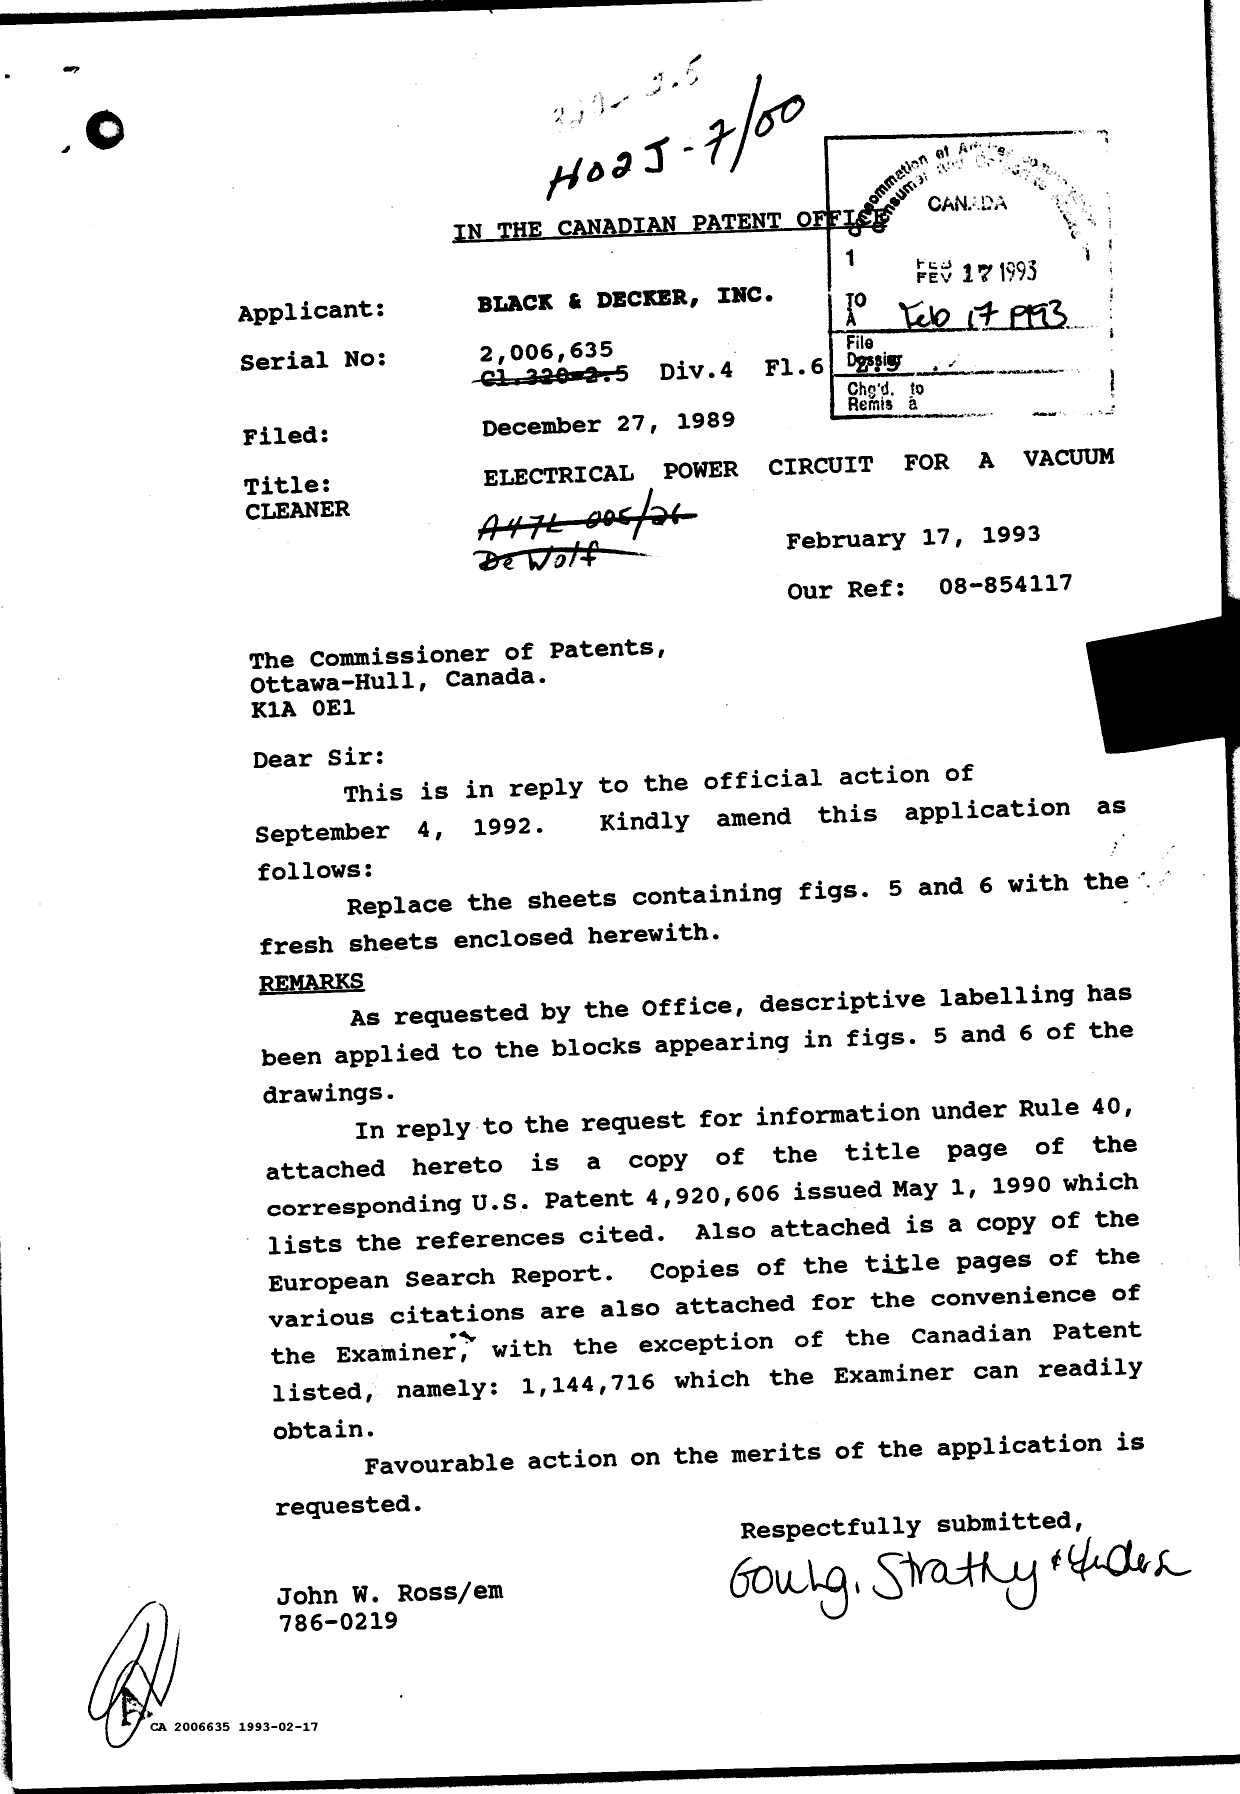 Document de brevet canadien 2006635. Correspondance de la poursuite 19930217. Image 1 de 2